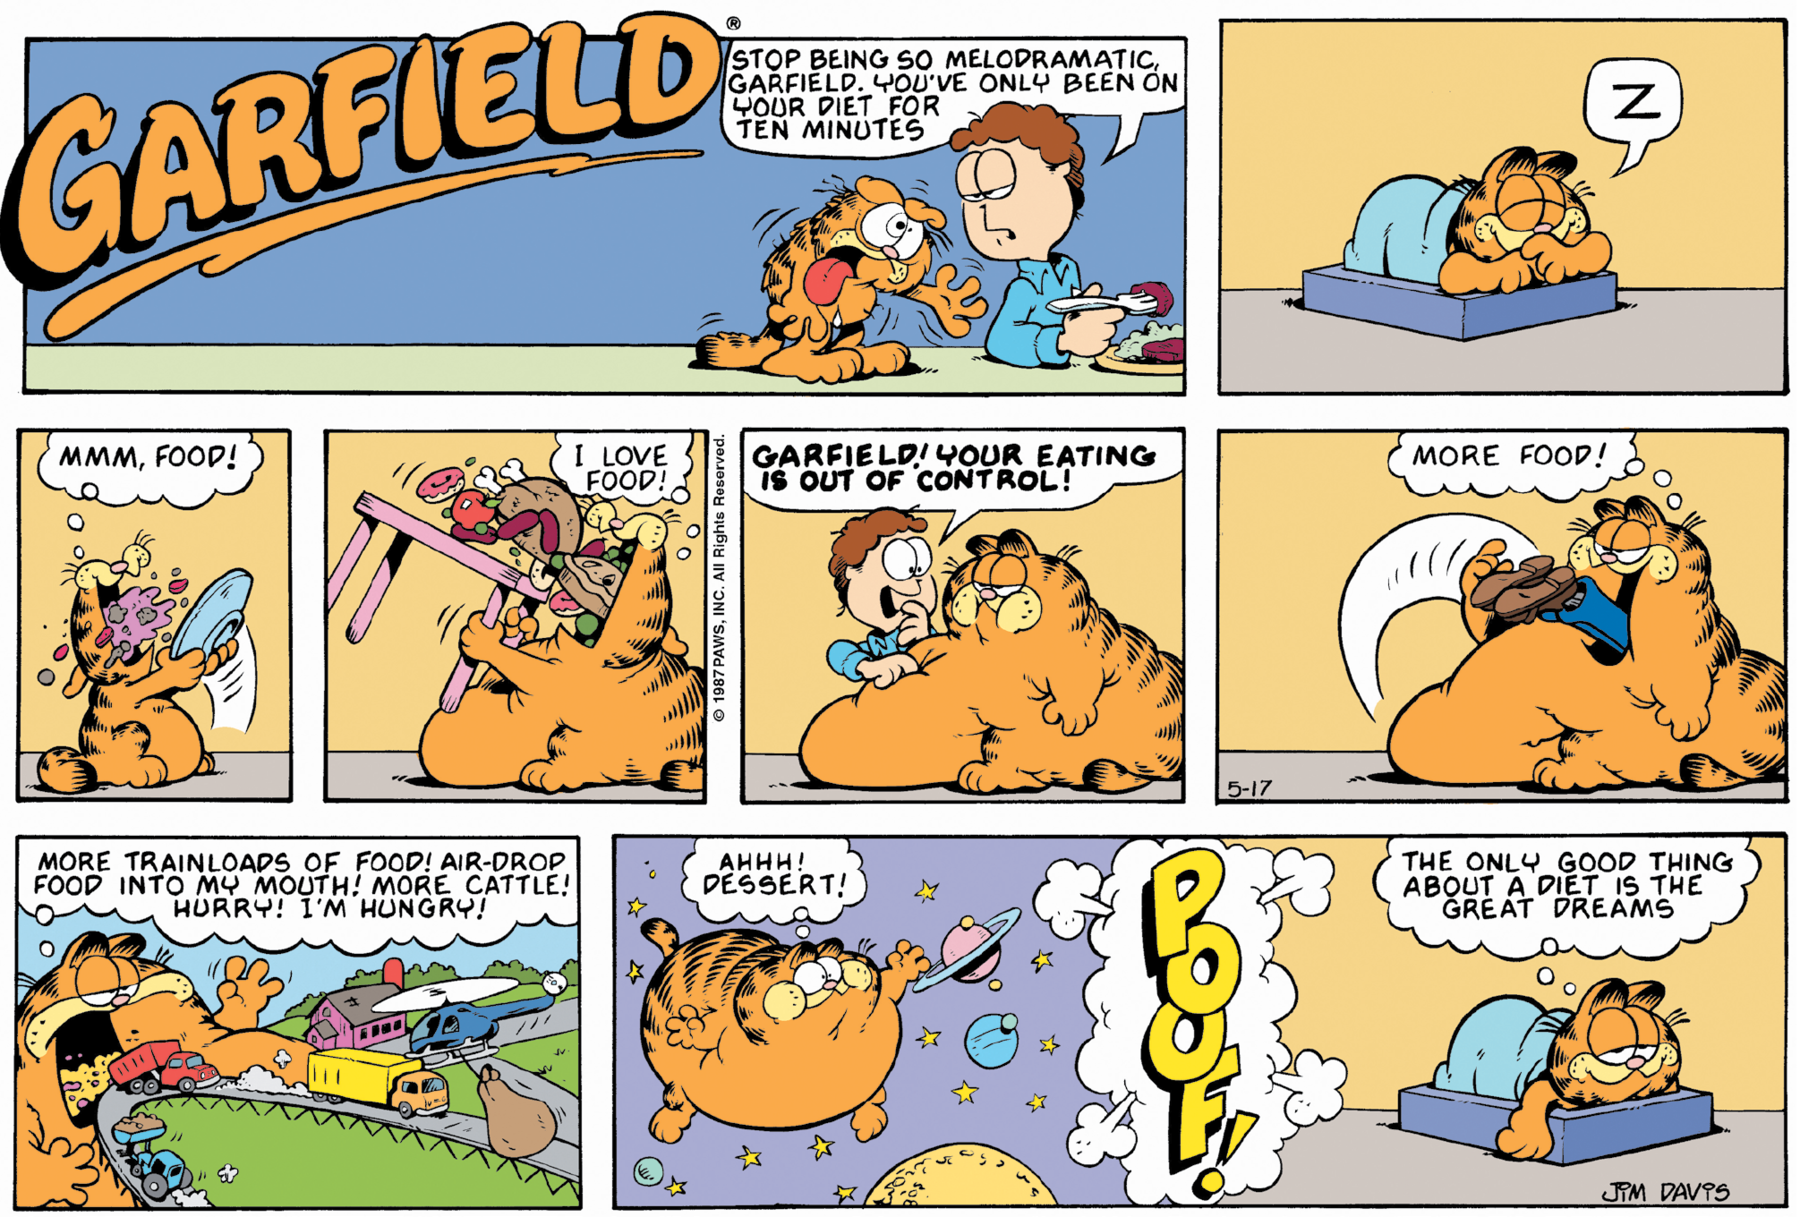 História em quadrinhos. Composta por oito quadros. Apresenta como personagens: Garfield, um gato de tamanho médio de cor laranja, com os olhos grandes, arredondados, manchas em preto no rabo e no dorso do corpo. Jon, homem de cabelos encaracolados em marrom, com camisa de gola em azul-claro e olhos bem grandes e arredondados. Título: Garfield. Quadro um: Sobre uma mesa comprida na horizontal em cinza claro, Garfield em pé sobre ela com o corpo para a direita, boca aberta com a língua para fora, olhos esbugalhados, pata dianteira para a frente com dedos entreabertos e linhas pretas pelo corpo e cabeça. Jon à direita, sentado de frente para mesa, com um garfo com comida marrom na mão direita e perto dele, um prato com comida em branco e marrom. Jon olhando para Garfield e dizendo: STOP BEING SO MELODRAMATIC, GARFIELD. YOU’VE ONLY BEEN ON YOUR DIET FOR TEN MINUTES. Quadro dois: Garfield deitado sobre uma cama pequena retangular em azul e com uma manta em azul-claro sobre ele. Ele está de olhos fechados, com leve sorriso e patas perto da boca dele. Próximo a ele, balão de fala: Z. Quadro três: Garfield em pé, com a barriga inchada, pegando nas patas dianteiras um prato cheio de comida que ele joga para dentro de sua boca. Ele pensa: MMM, FOOD! Quadro quatro: Garfield à direita, com a barriga maior voltado para a esquerda, duas vezes maior que o tamanho normal, pega com as patas dianteiras uma mesa com muitas comidas sobre ela e as leva para dentro da sua boca. Ele pensa: I LOVE FOOD! Quadro cinco: Garfield com o corpo para a esquerda, maior ainda devido a quantidade de comida, olhando ao longe e perto dele, Jon, com a mão esquerda sobre a barriga de Garfield e o fala: GARFIELD! YOUR EATING IS OUT OF CONTROL! Quadro seis: Garfield na mesma posição, com a pata dianteira esquerda lança Jon para dentro da boca dele. Vê-se apenas as pernas de Jon para fora da boca. Garfield, pensa: MORE FOOD! Quadro sete: Garfield à esquerda, visto da cintura para cima, com a boca bem aberta comendo toda a cidade, com grama verde, rua, caminhões passando, casa de paredes rosa e helicóptero azul sobrevoando no céu. Ele pensa: MORE TRAINLOADS OF FOOD! AIR-DROP FOOD INTO MY MOUTH ! MORE, CATTLE ! HURRY ! I’M HUNGRY! Quadro oito: Garfield à esquerda, ainda inchado, com o corpo flutuando no espaço sideral, em roxo, com estrelas pequenas em amarelo, três esferas celestes. Ele pensa: AHHH! DESSERT! Ao centro, texto! POOF! À direita, Garfield deitado, olhando para frente, com a pata esquerda para fora da cama e pensa: THE ONLY GOOD THING ABOUT A DIET IS THE GREAT DREAMS.